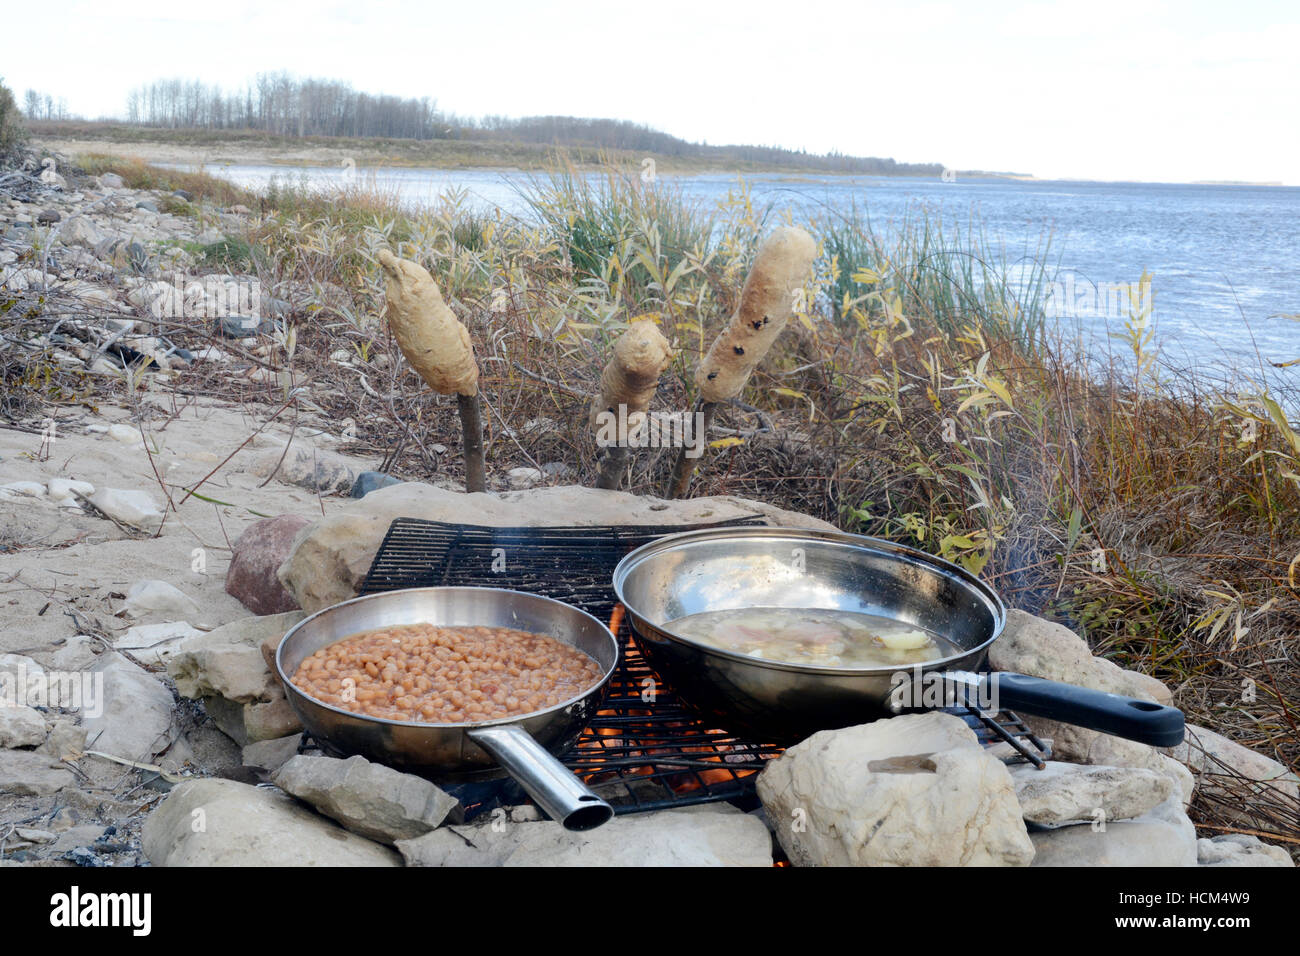 Bannock am Stiel, eine native North American Essen ähnlich wie Brot, gekocht auf einem Lagerfeuer in Nord-Ontario, Kanada. Stockfoto